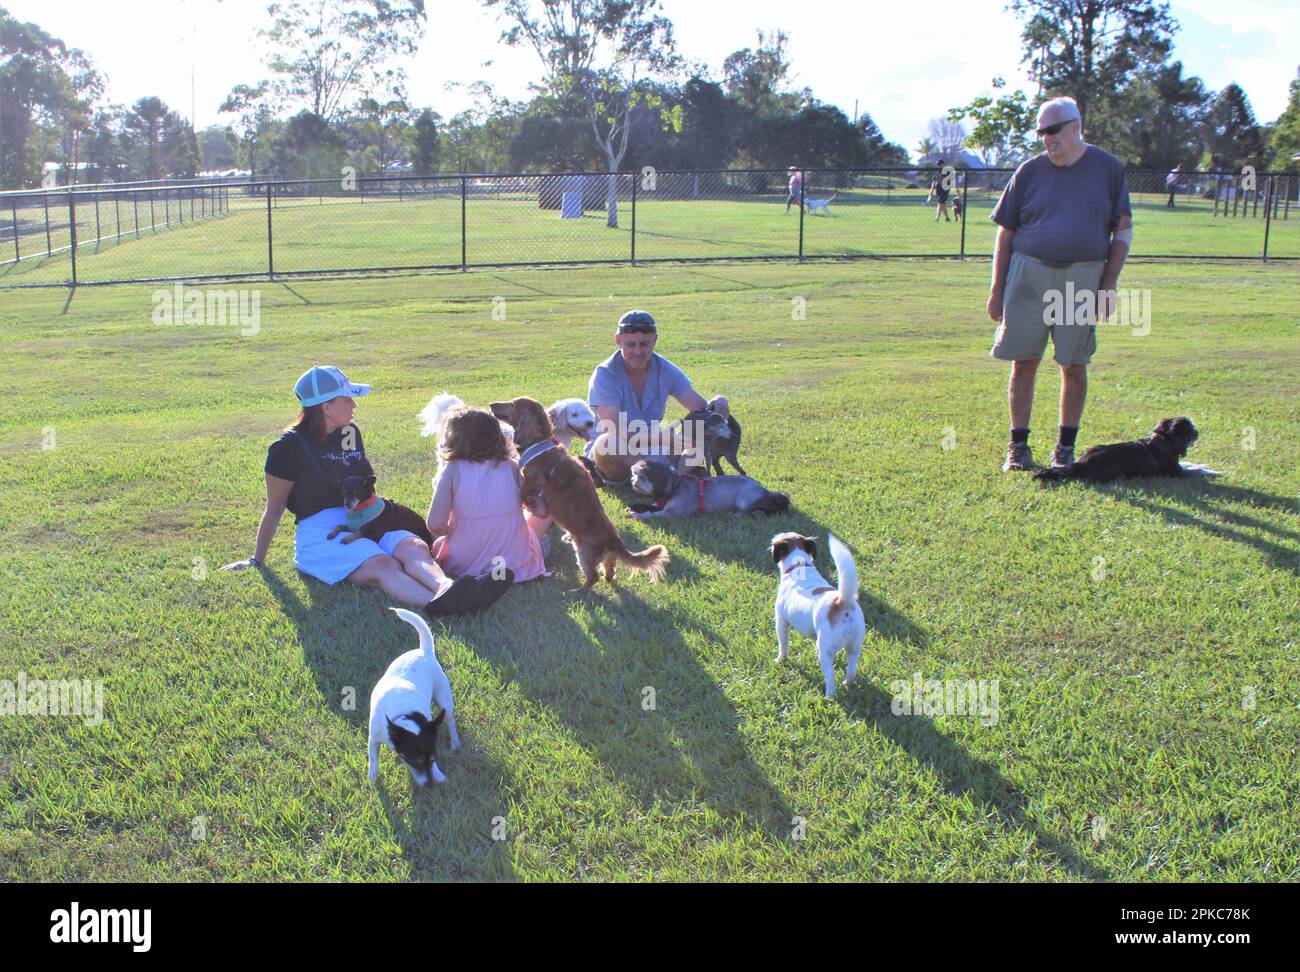 Riverdale Small Dog Park, Logan City, Queensland, Australien. Gruppenfreizeitaktivitäten für mehrere Generationen in einem Hundegehege ohne Leine. Stockfoto